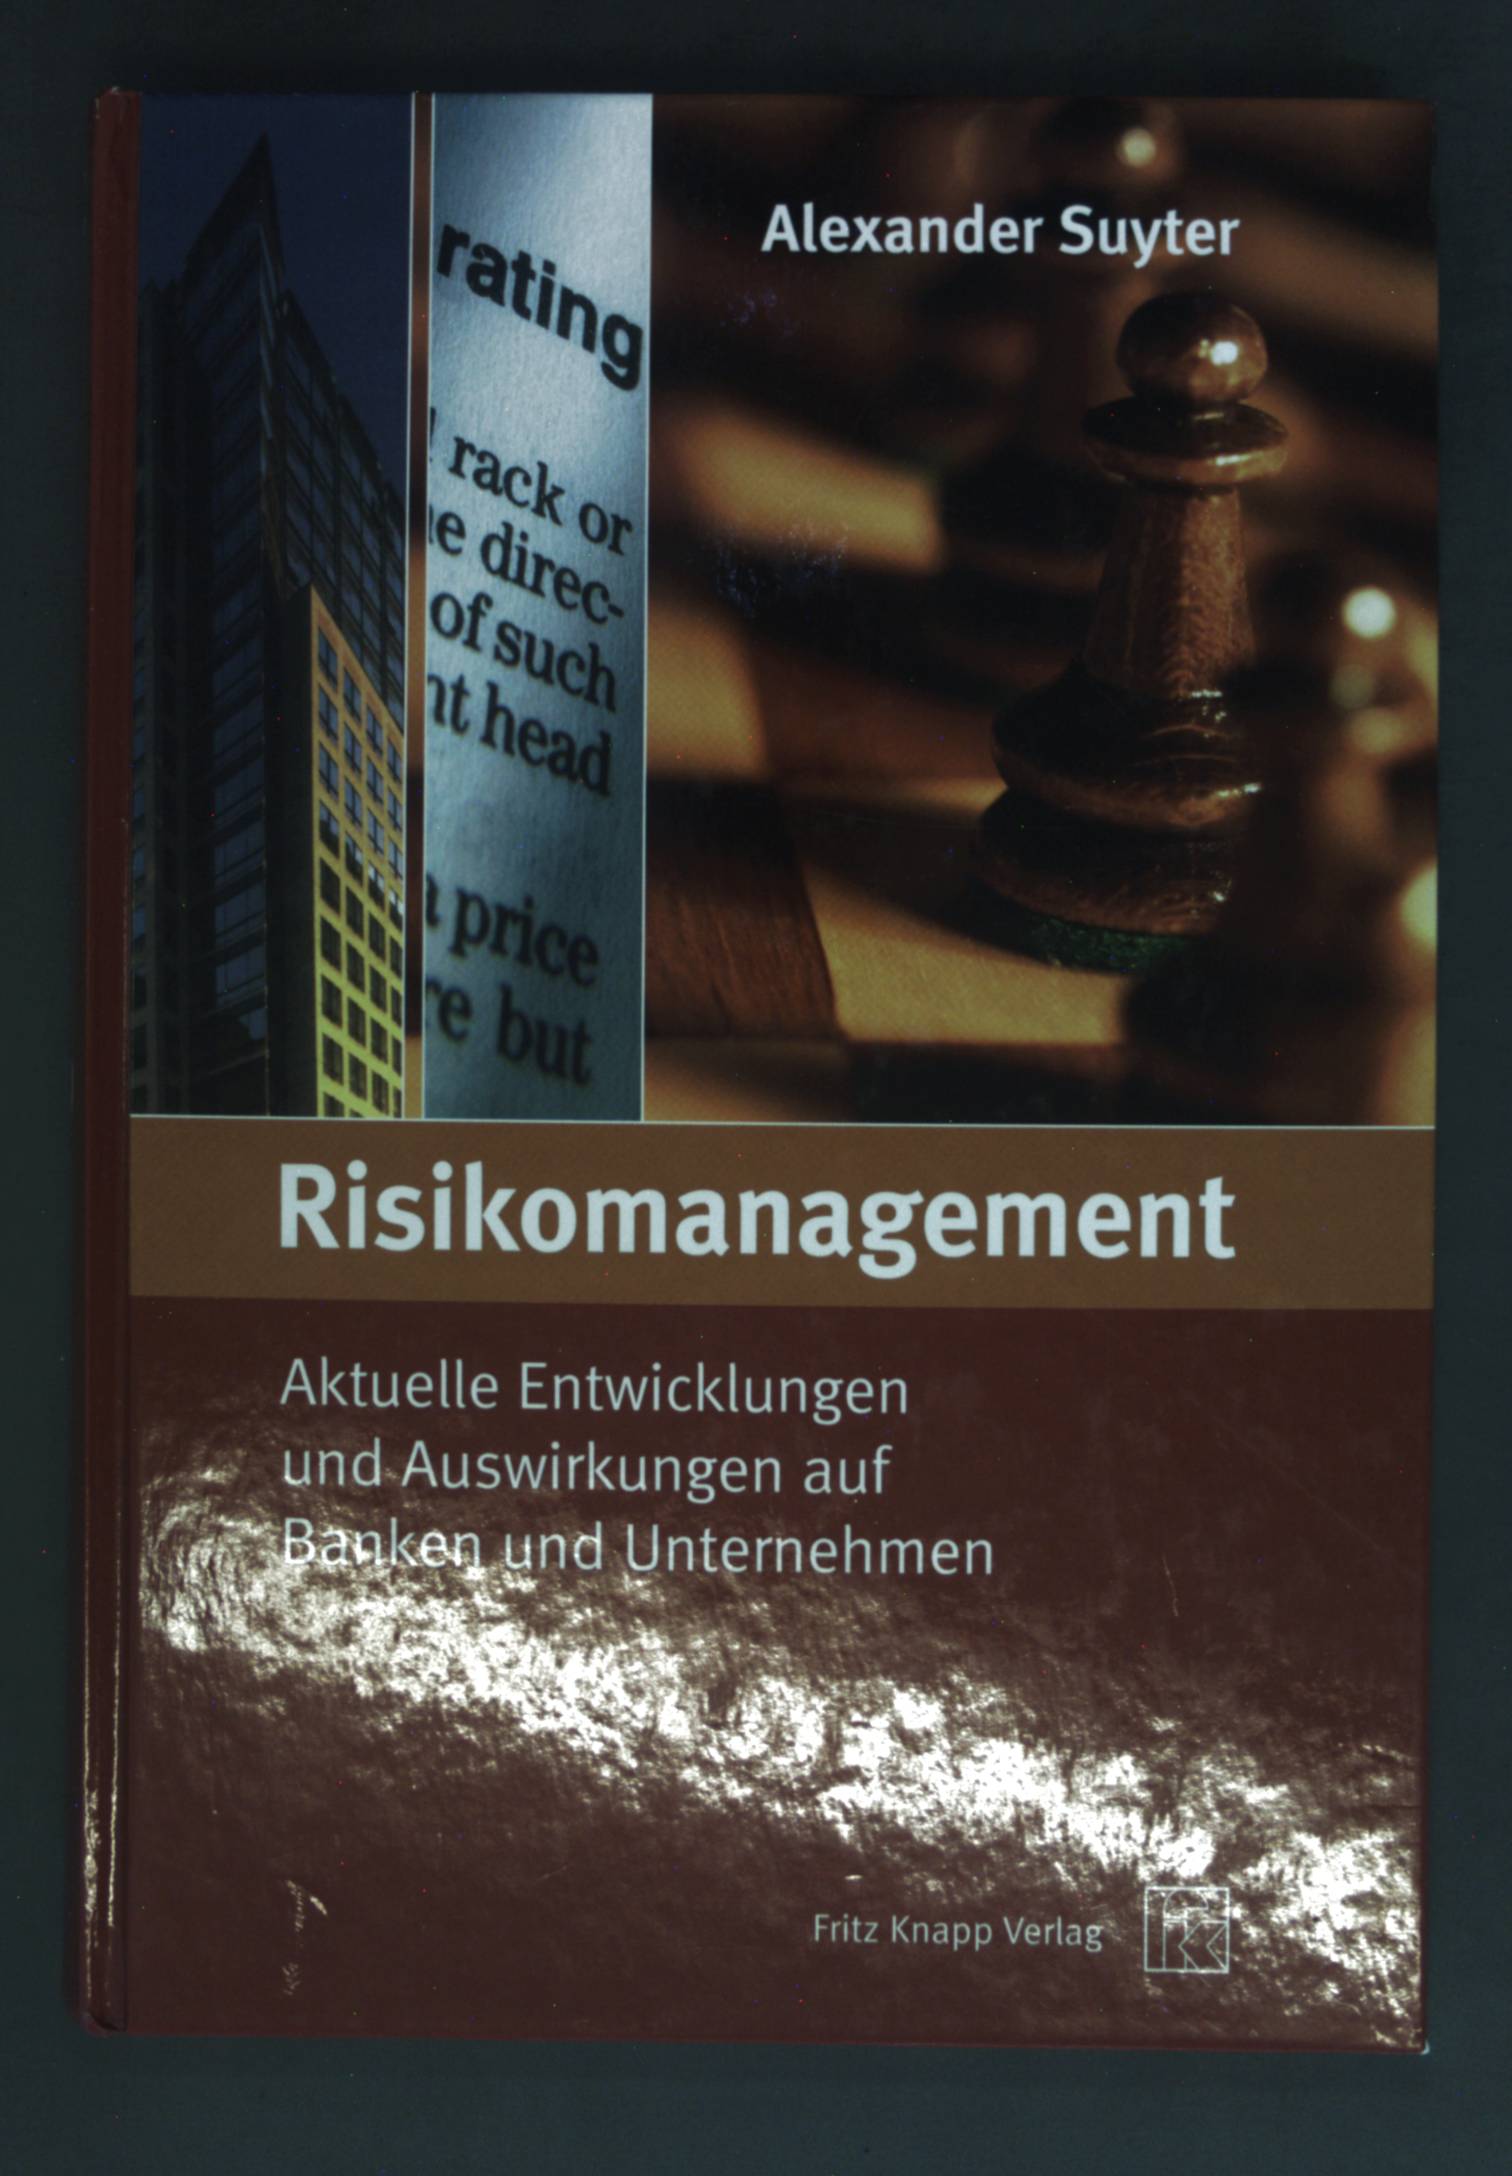 Risikomanagement : aktuelle Entwicklungen und Auswirkungen auf Banken und Unternehmen. - Suyter, Alexander